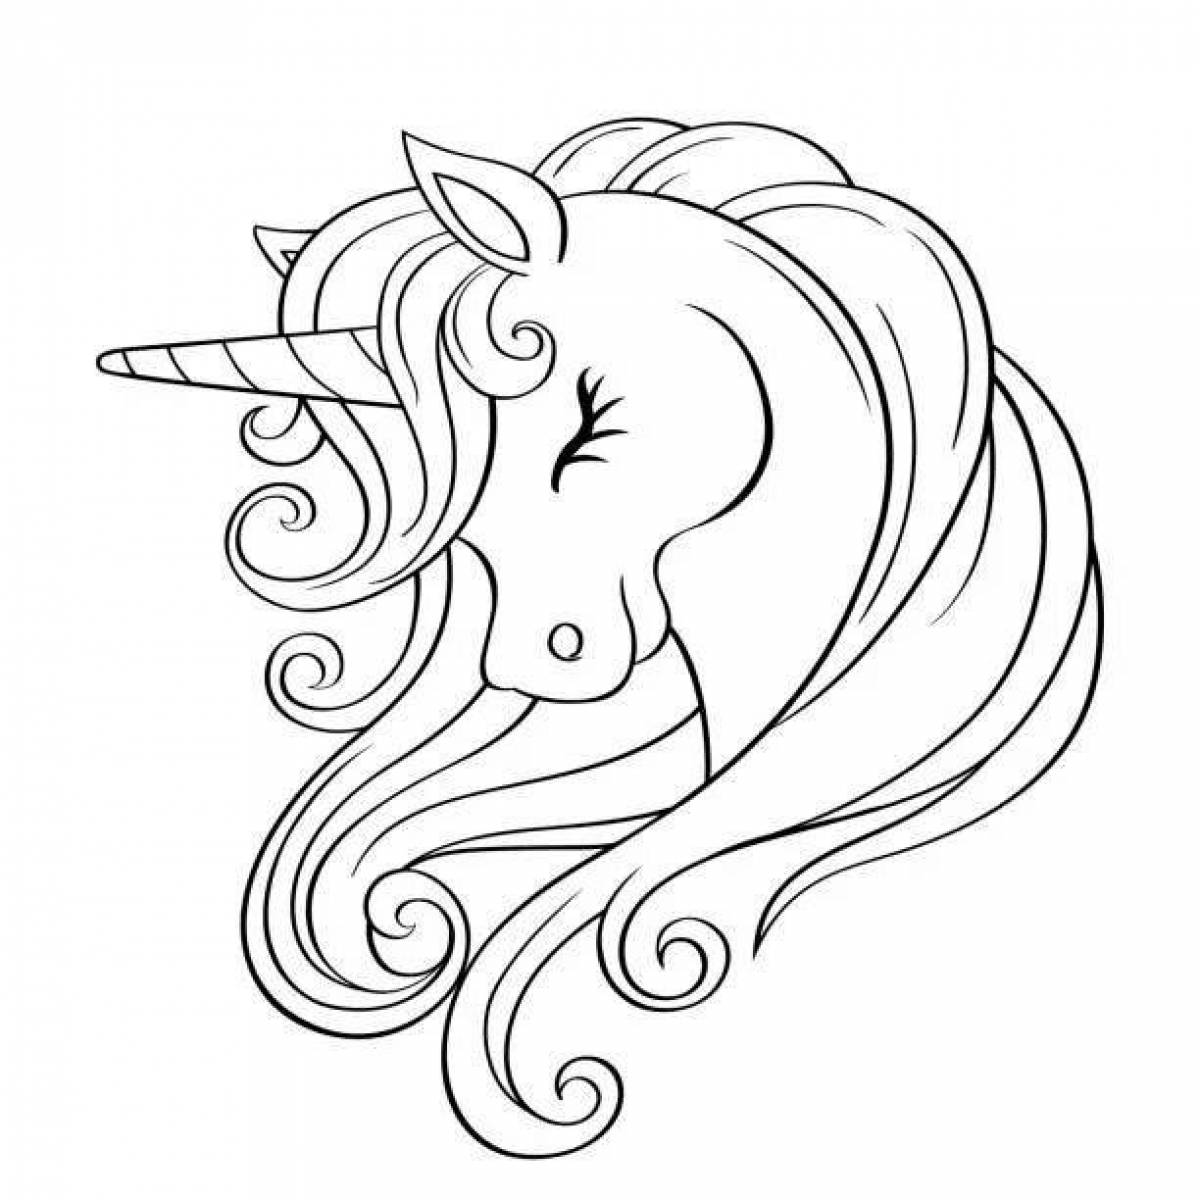 Sparkling unicorn head coloring book